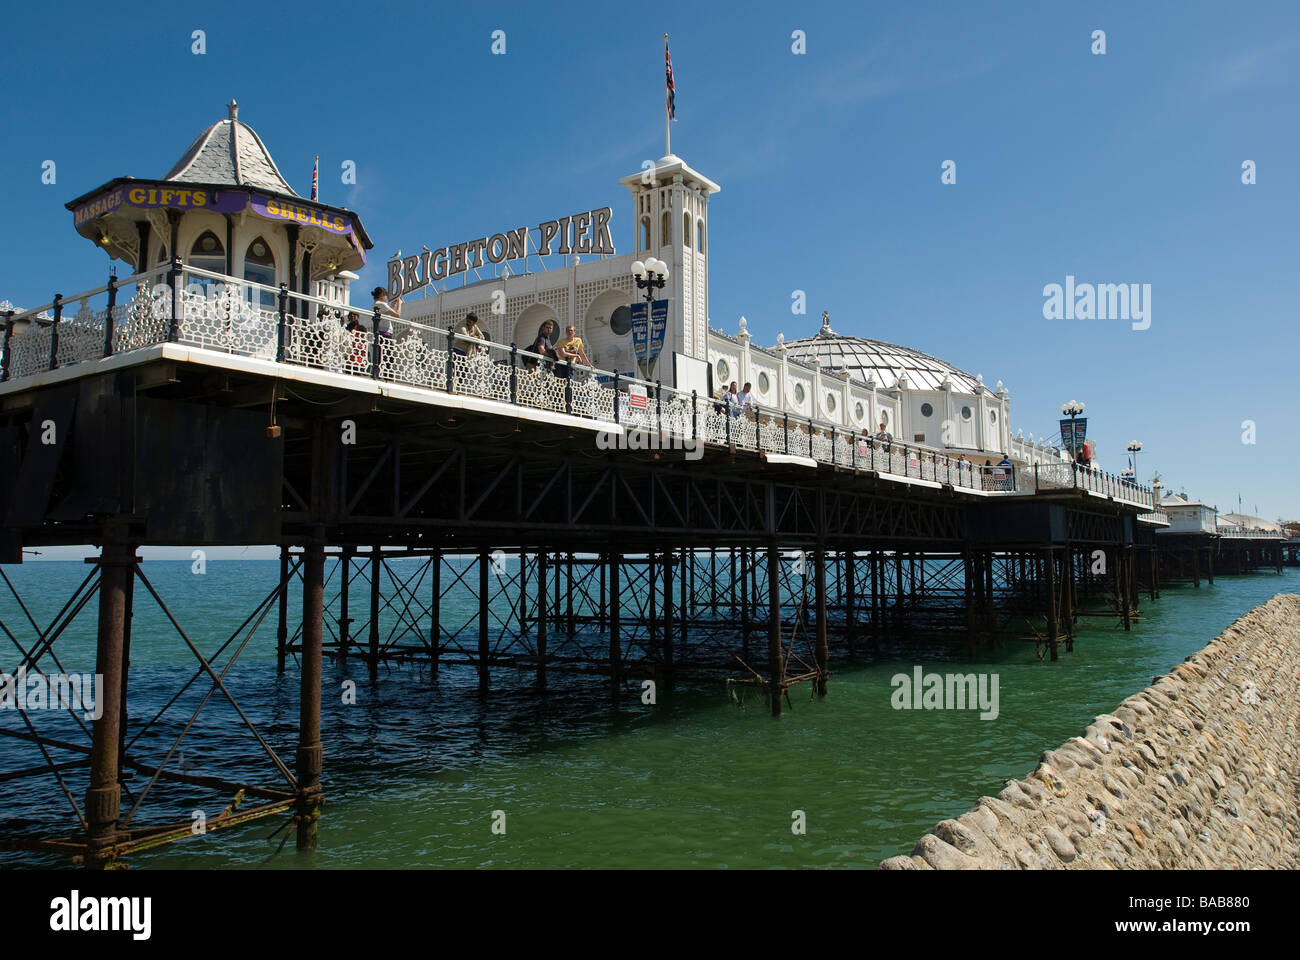 Brighton Palace Pier, England Stock Photo